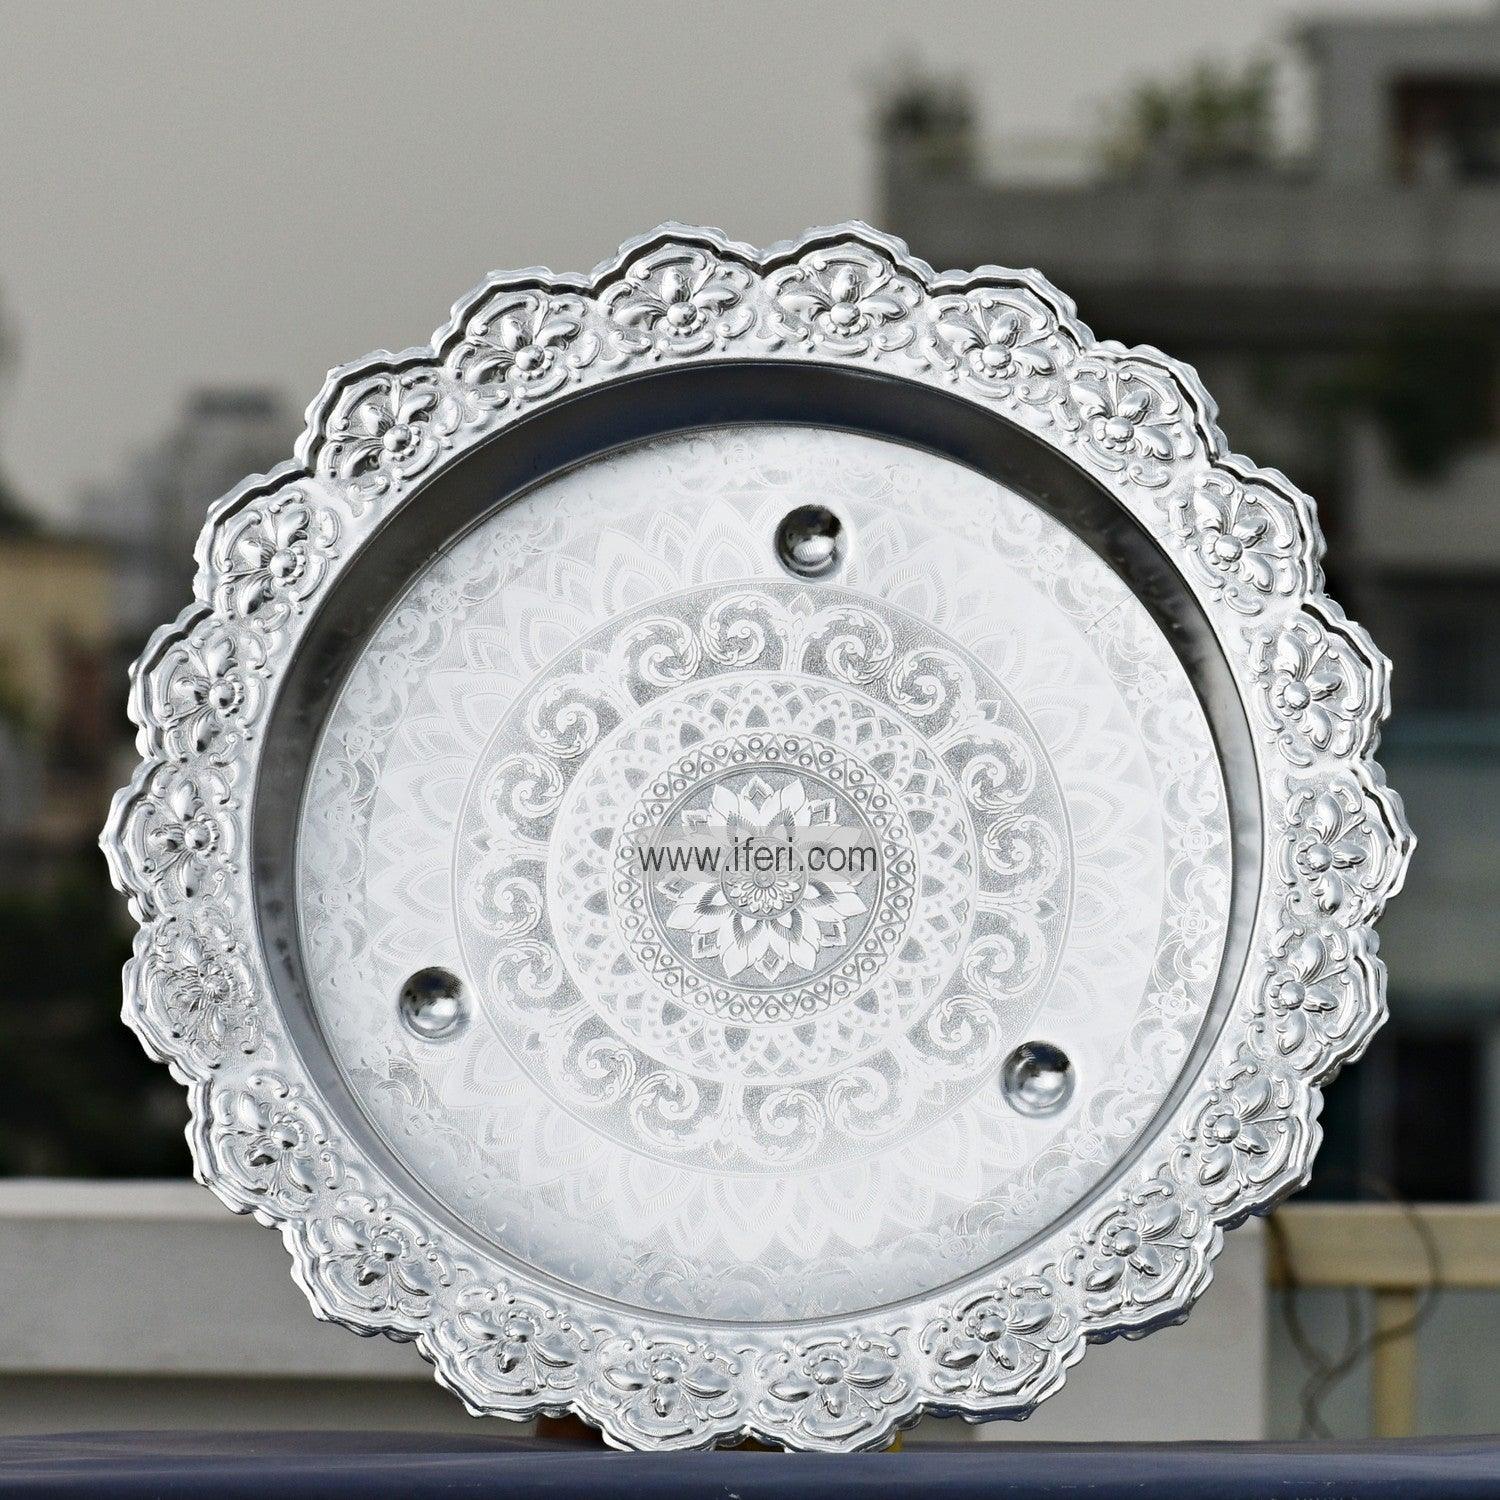 45 cm Vintage Aluminium Food Plate/Thali UT1164 Price in Bangladesh - iferi.com